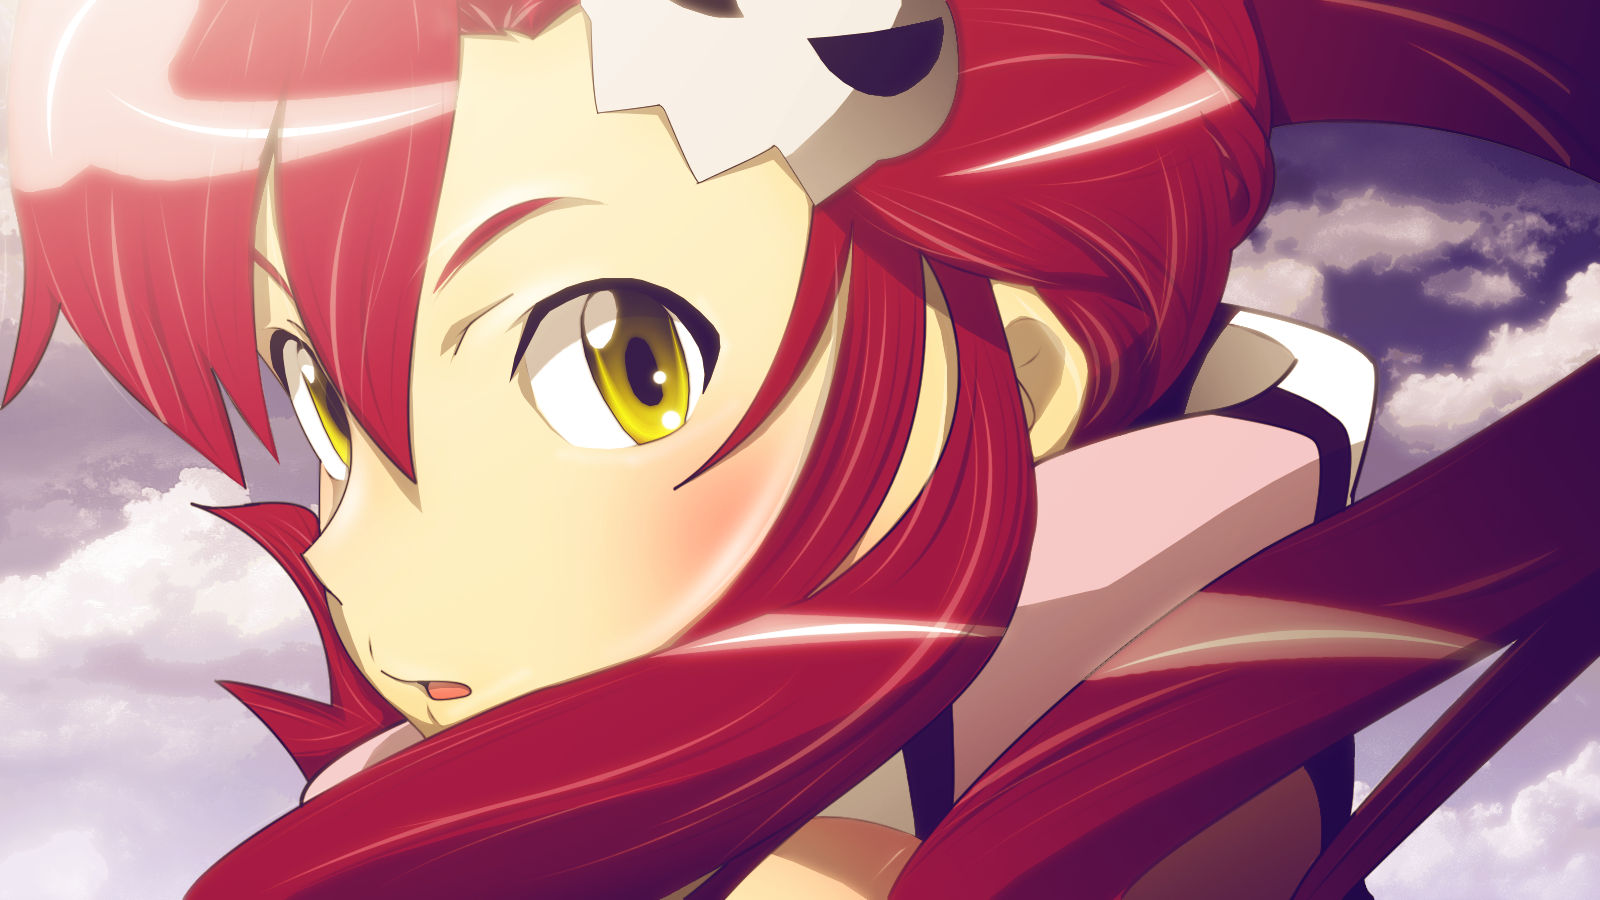  Littner Red Haired Anime Girl HD Wallpapers Epic Desktop Backgrounds